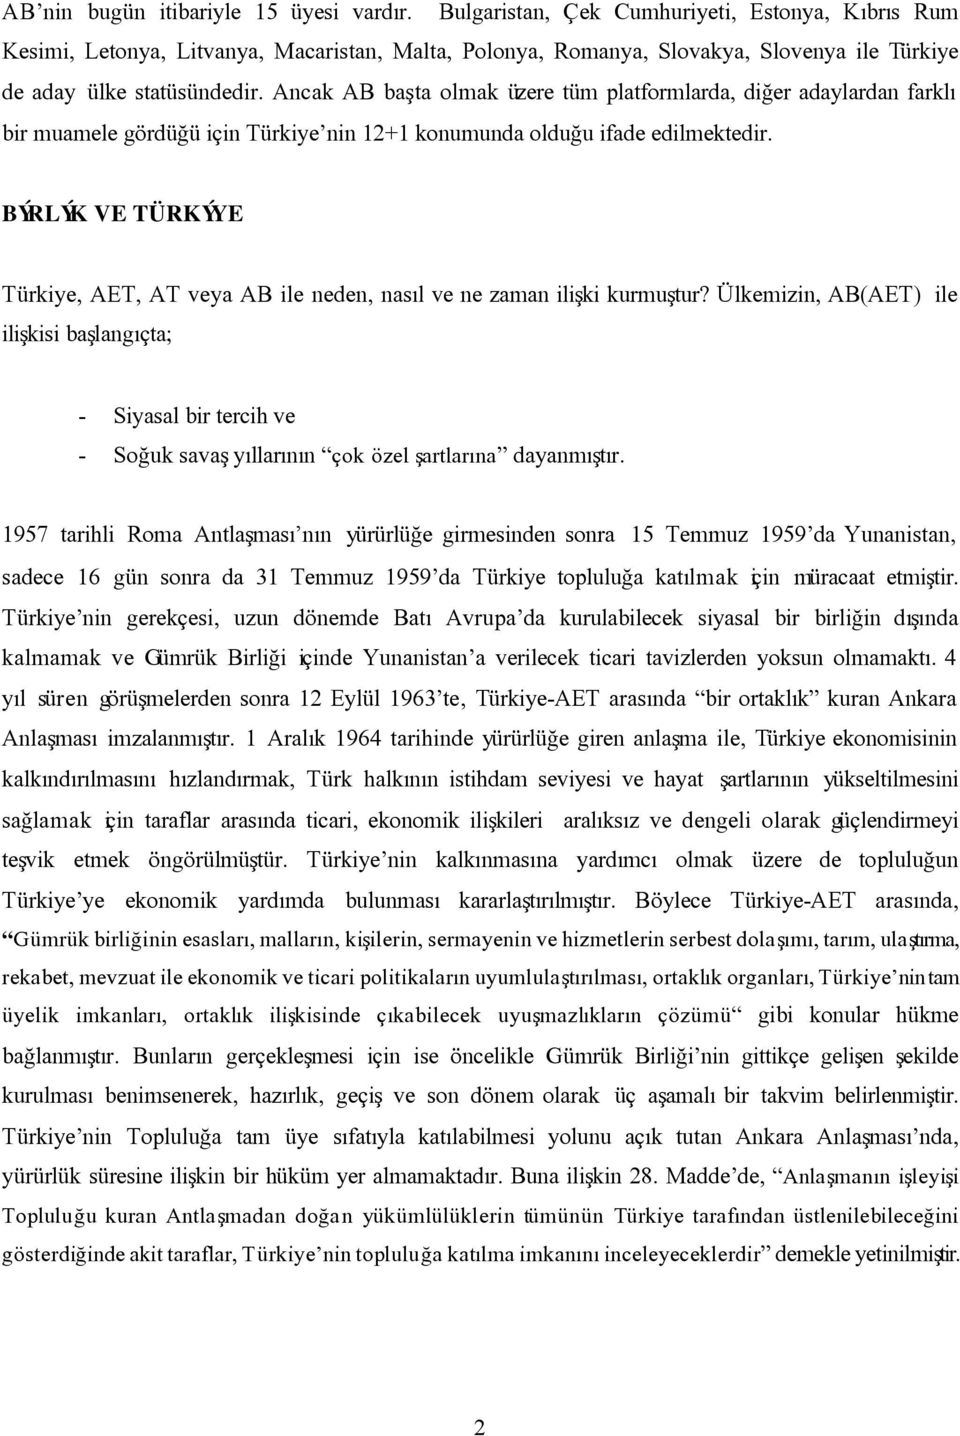 Ancak AB baþta olmak üzere tüm platformlarda, diðer adaylardan farklý bir muamele gördüðü için Türkiye nin 12+1 konumunda olduðu ifade edilmektedir.